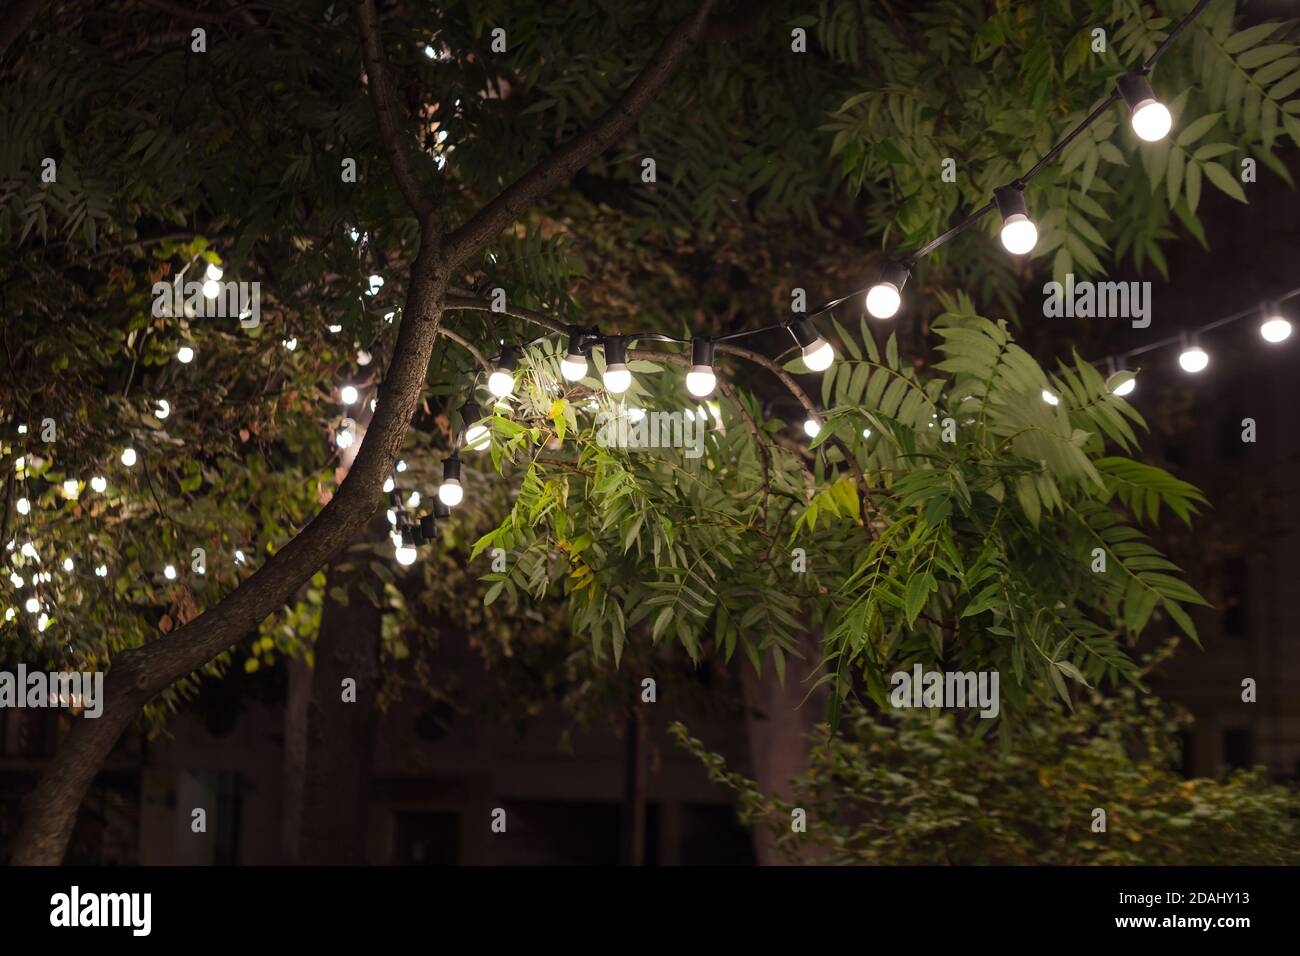 Hinterhofbeleuchtung, Licht im Abendgarten, elektrische Laternen mit rundem  Diffusor. Lampe Girlande der Glühbirnen auf einem Baum Zweig unter der  Stockfotografie - Alamy